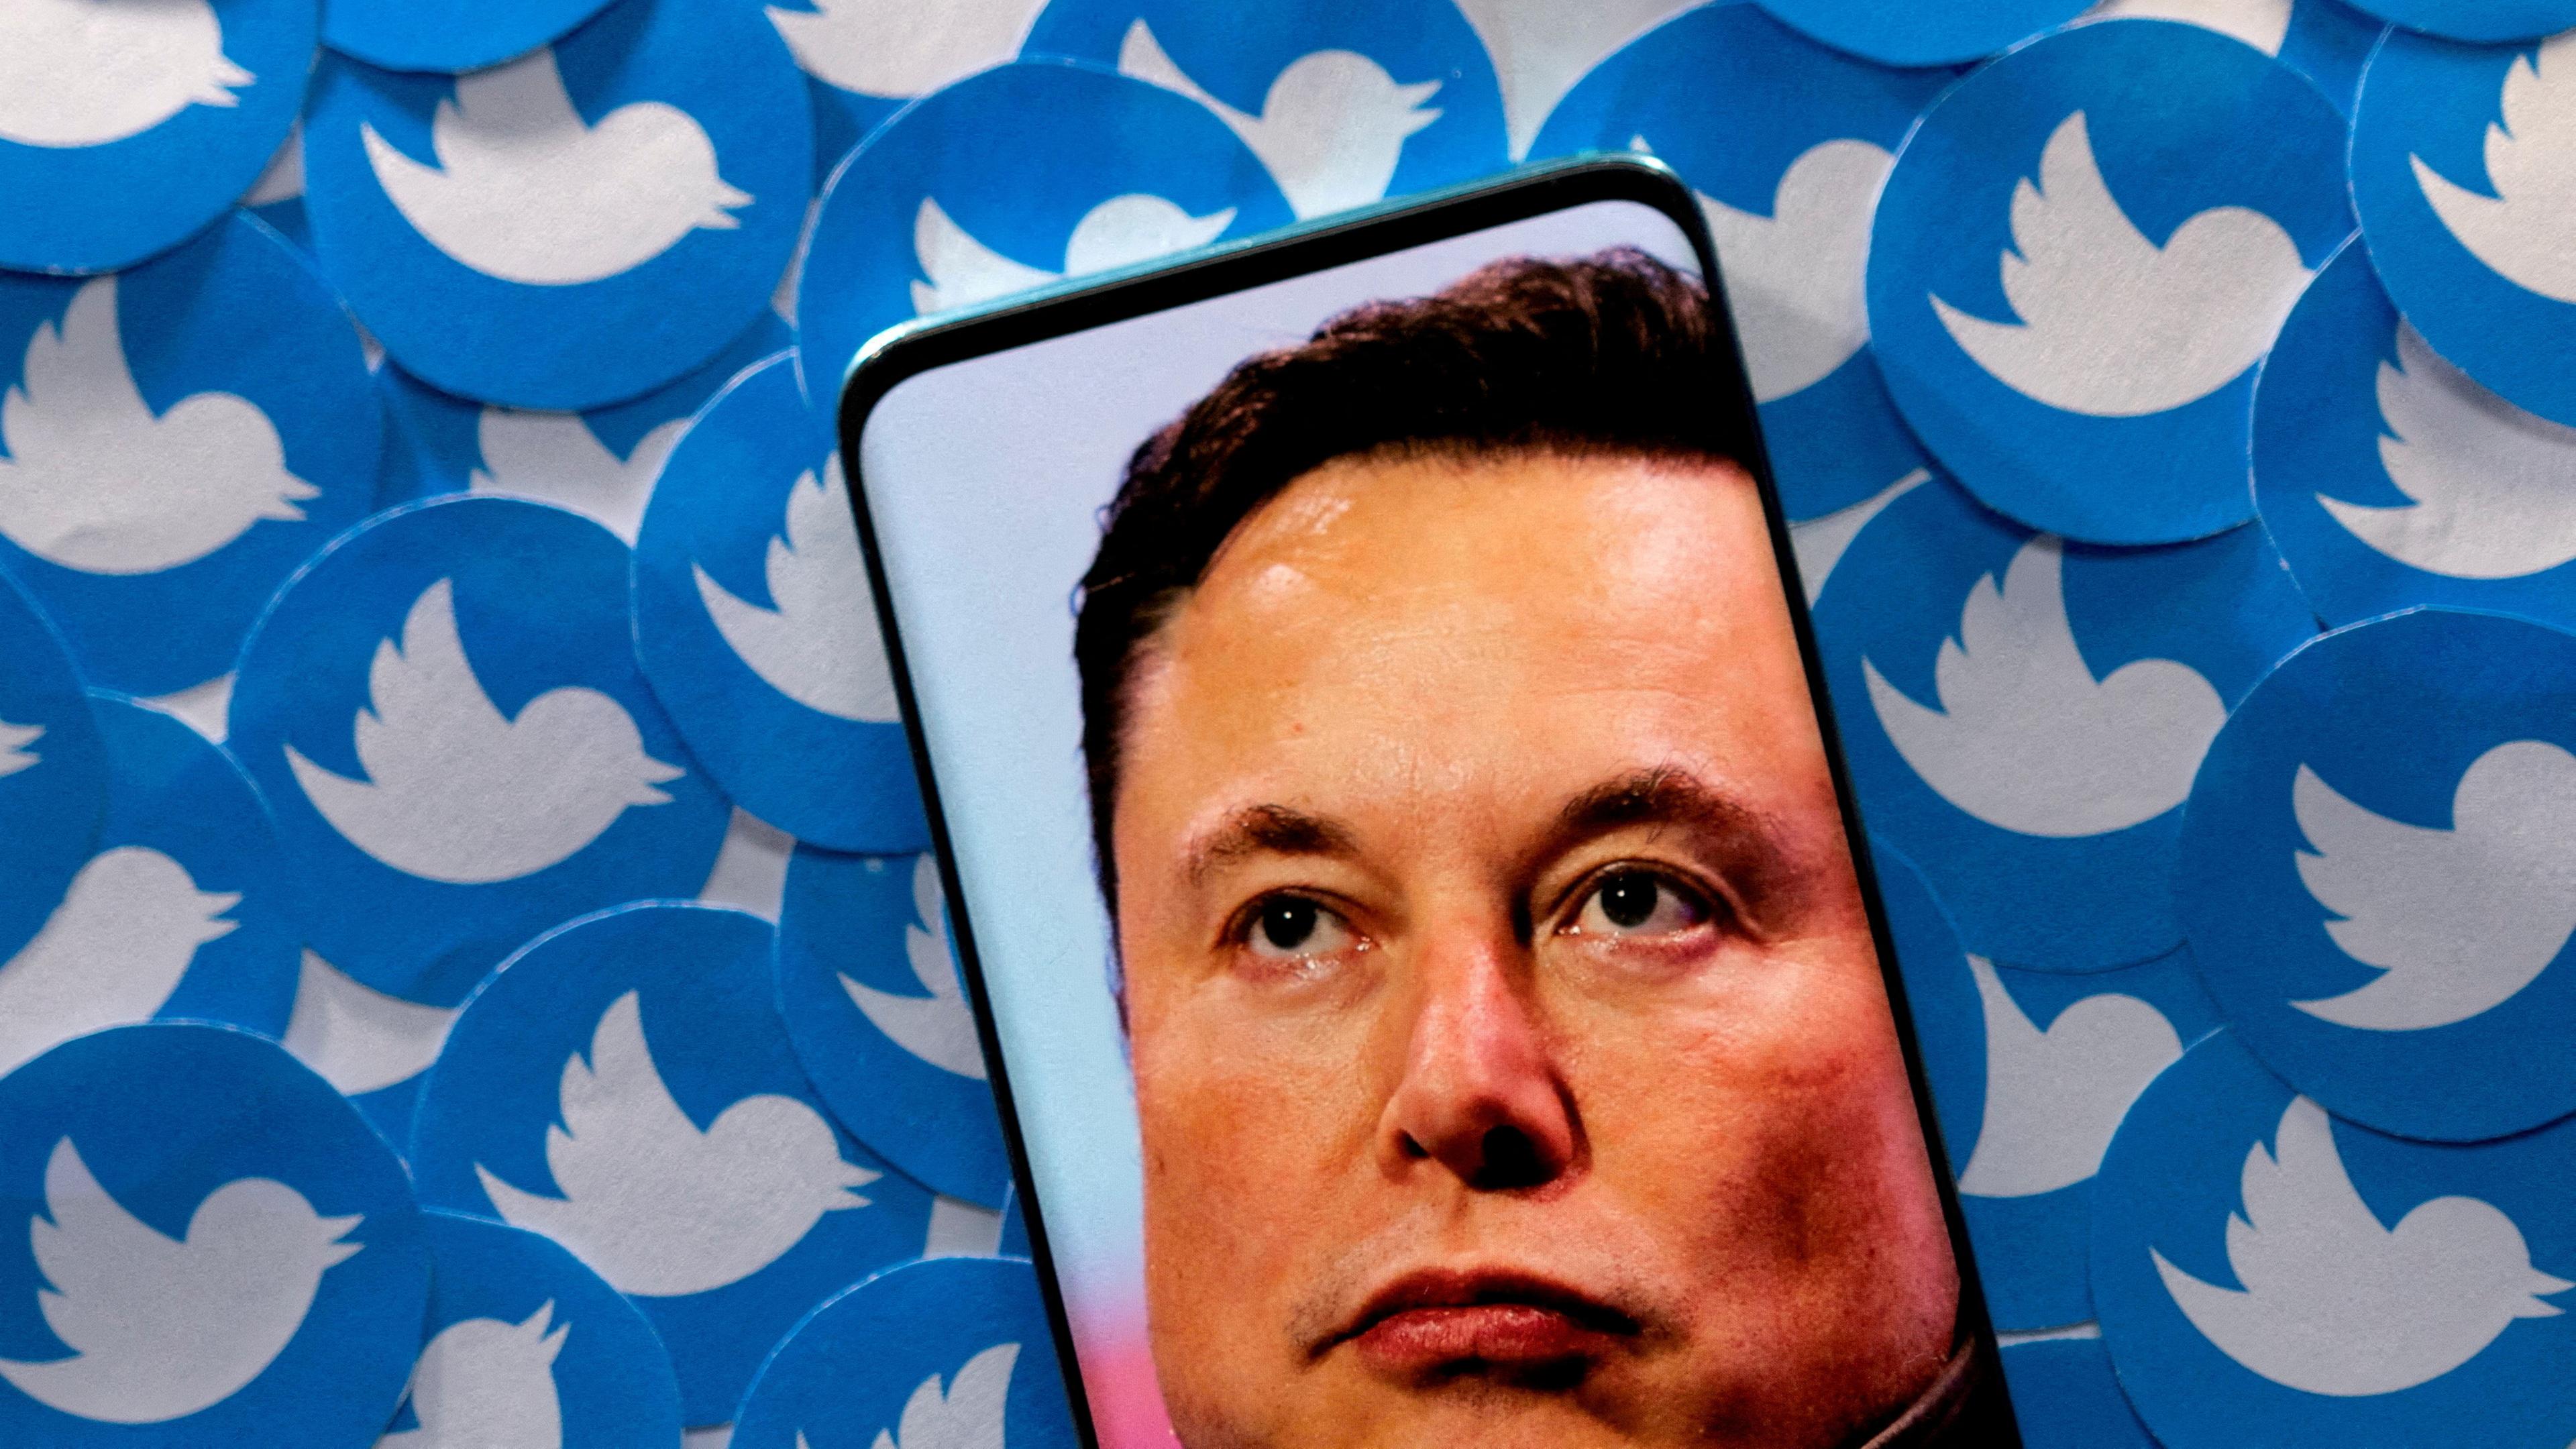 Das Konterfei Elon Musks auf einem Handy, dahinter zahlreiche Twitter-Symbole.